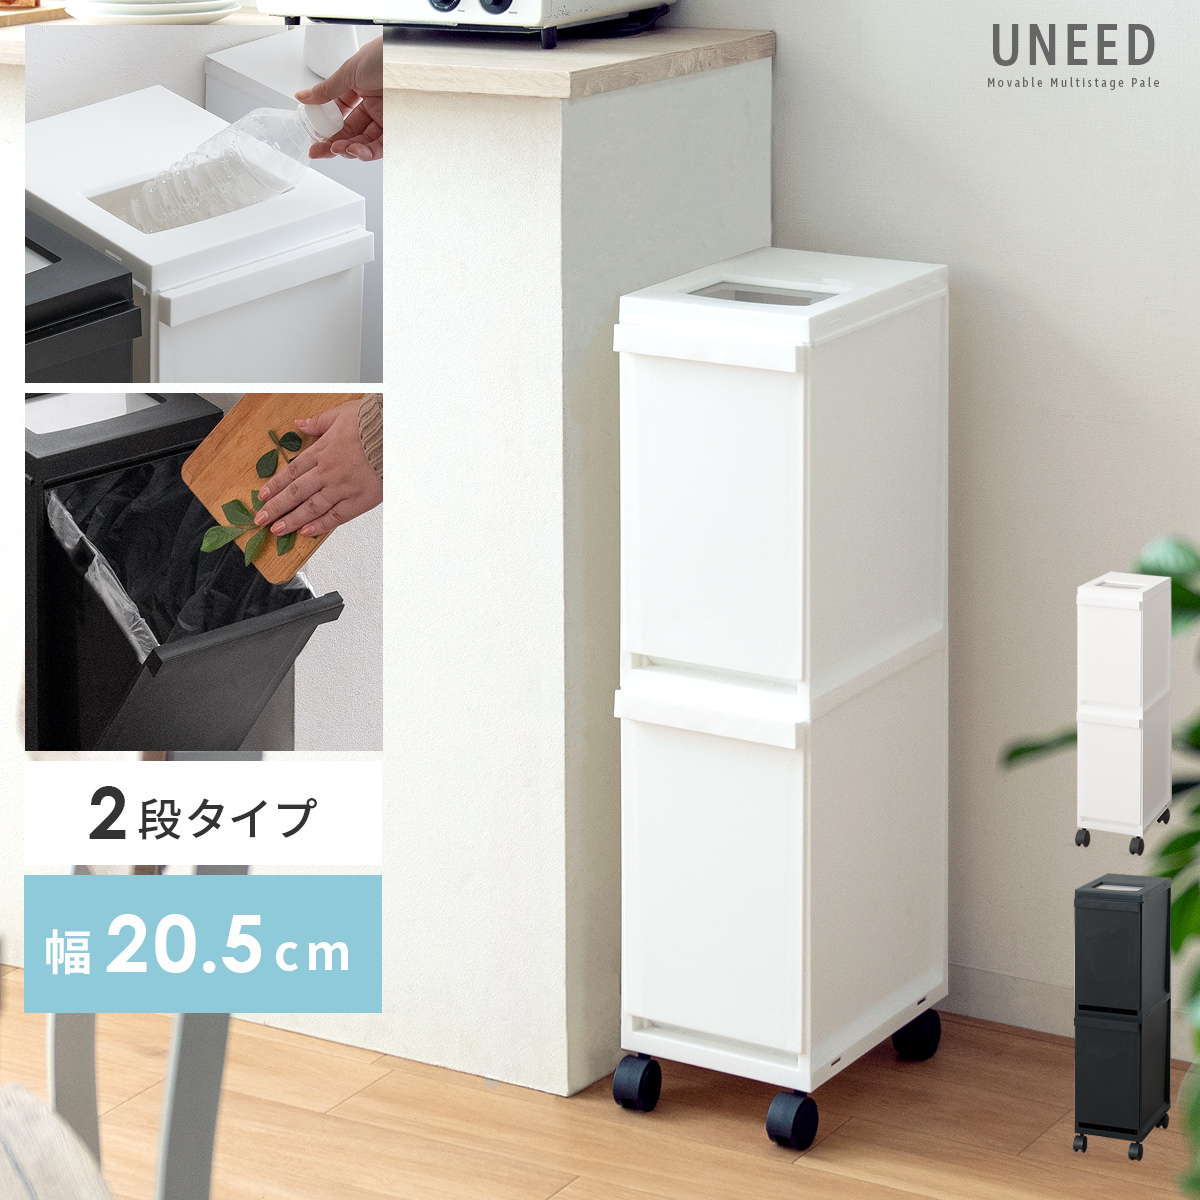 多段式ペール UNEED (ユニード) 2段タイプ 【公式】 エア・リゾーム インテリア・家具通販